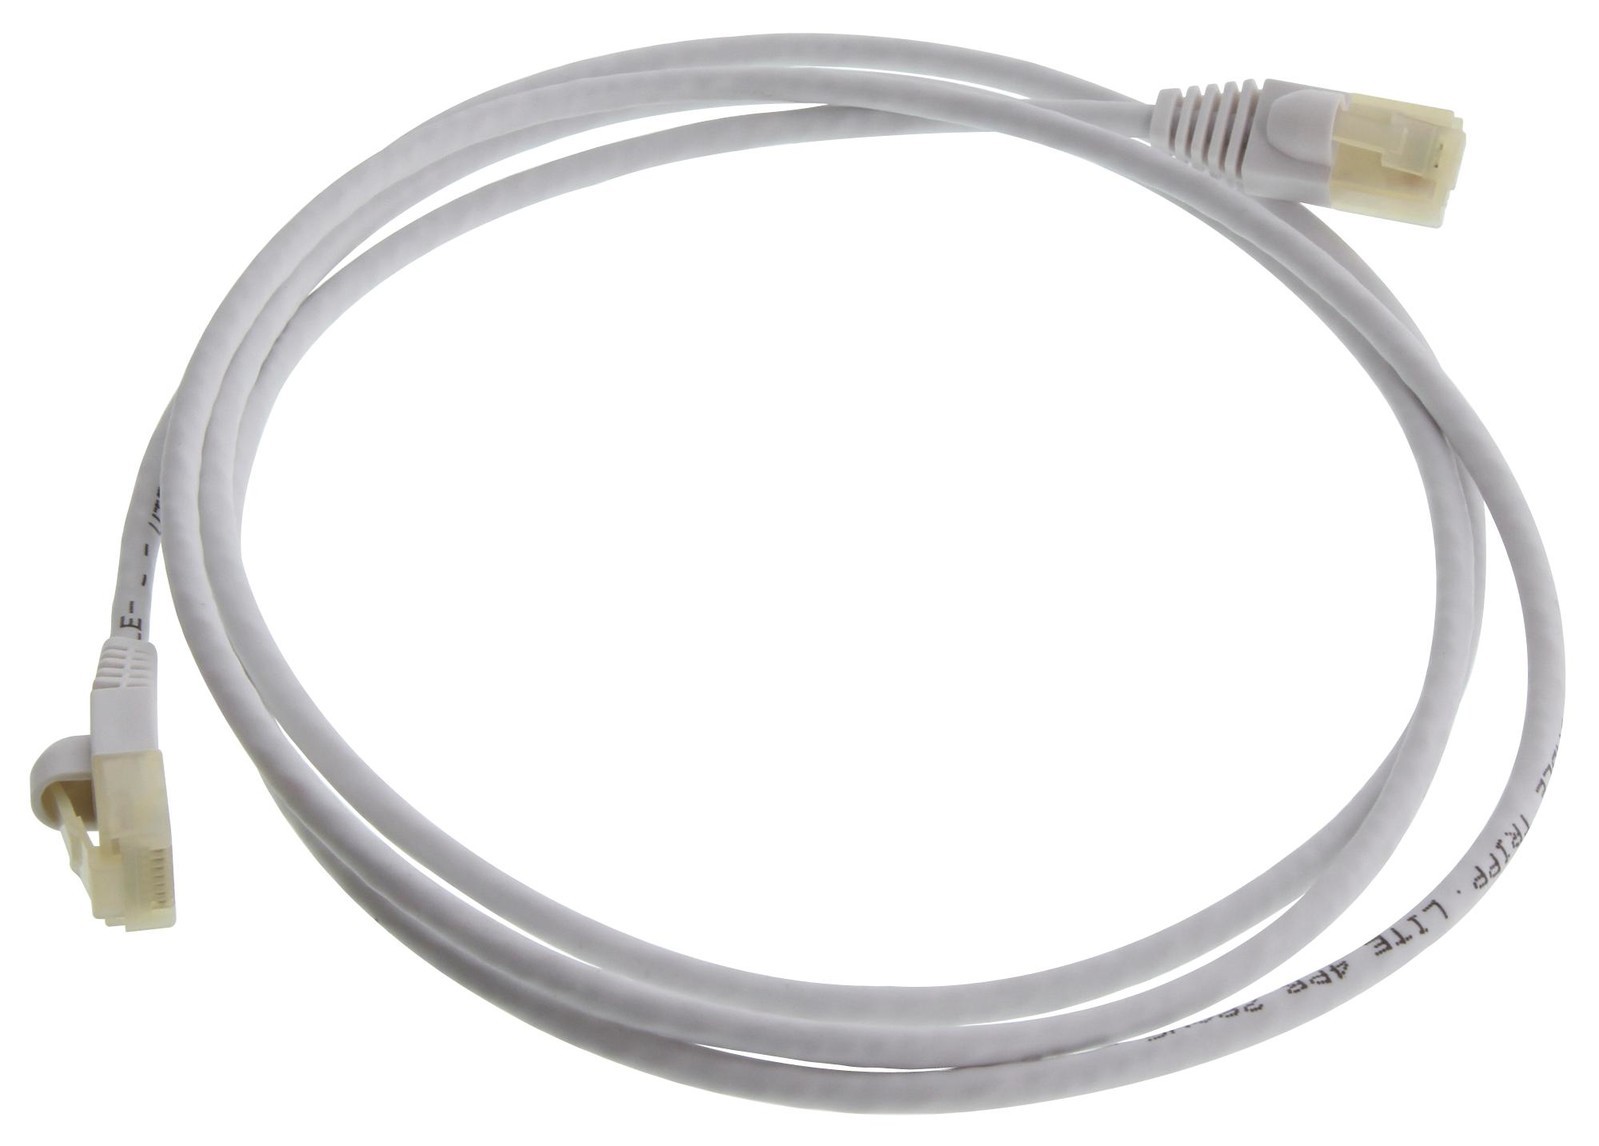 Eaton Tripp Lite N261Ab-S05-Wh Enet Cable, Rj45 Plug-Plug, 5Ft, White